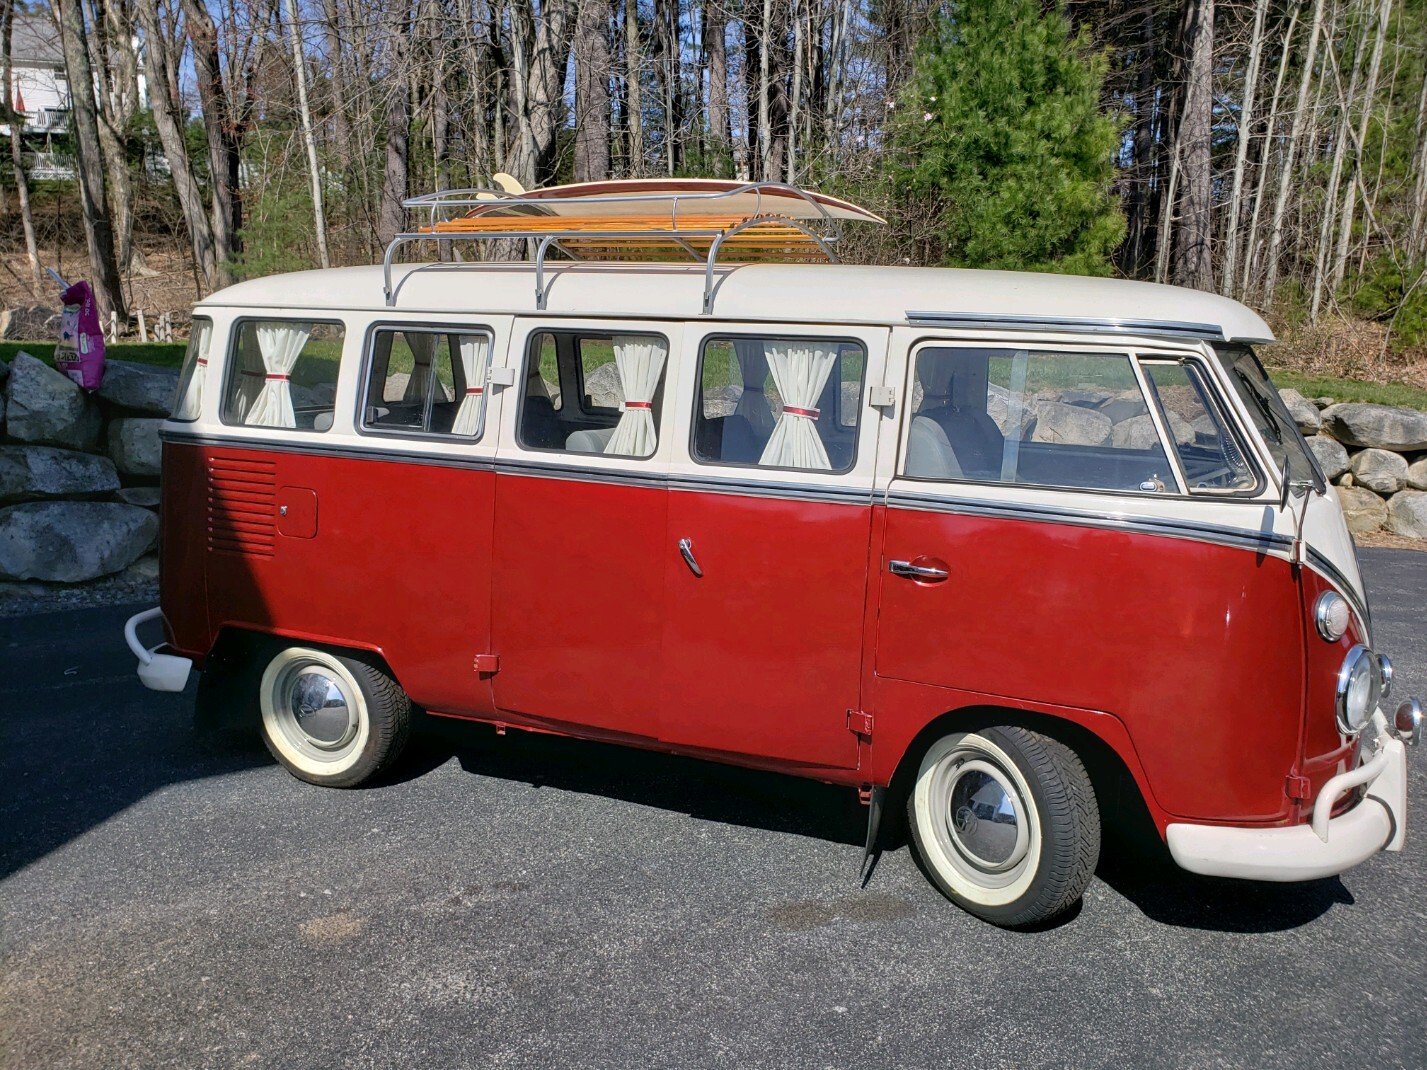 70's vans for sale